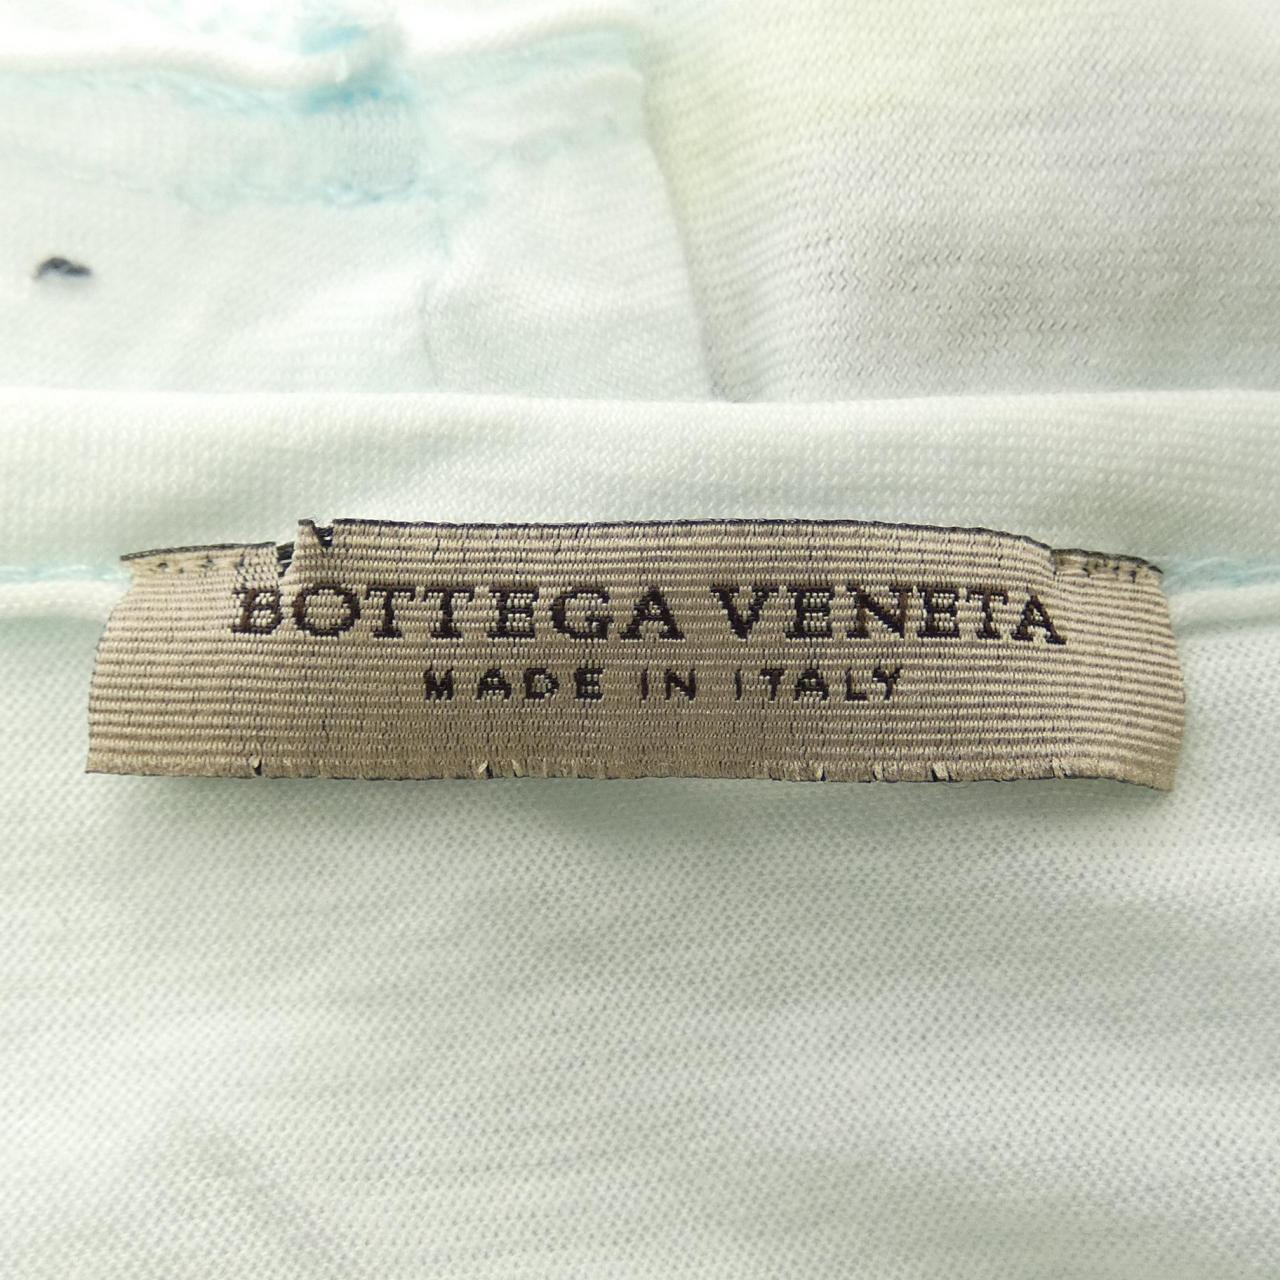 ボッテガヴェネタ BOTTEGA VENETA トップス